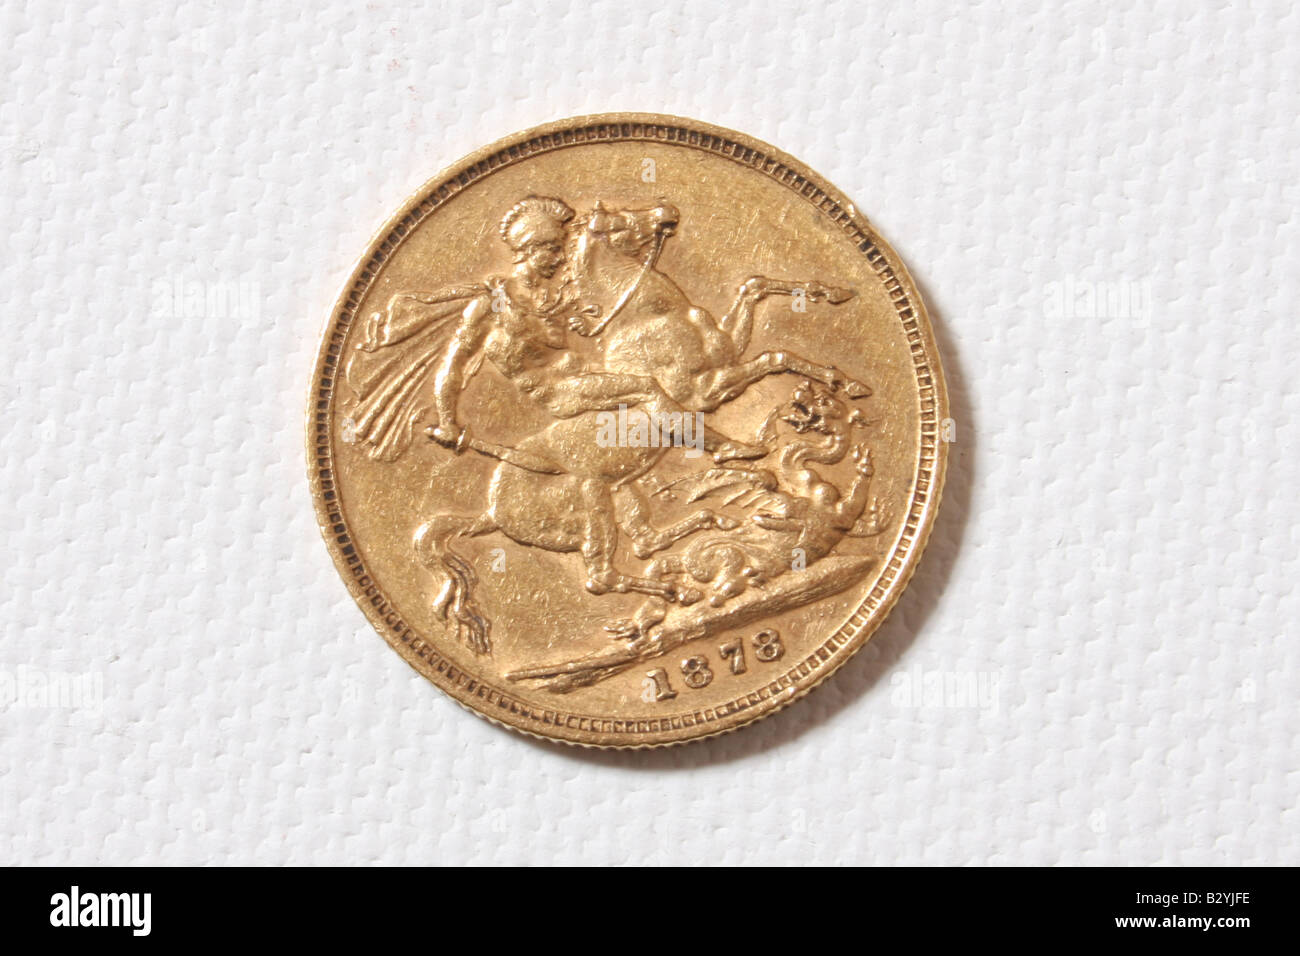 1878 britische sovereign Goldmünze. Stockfoto